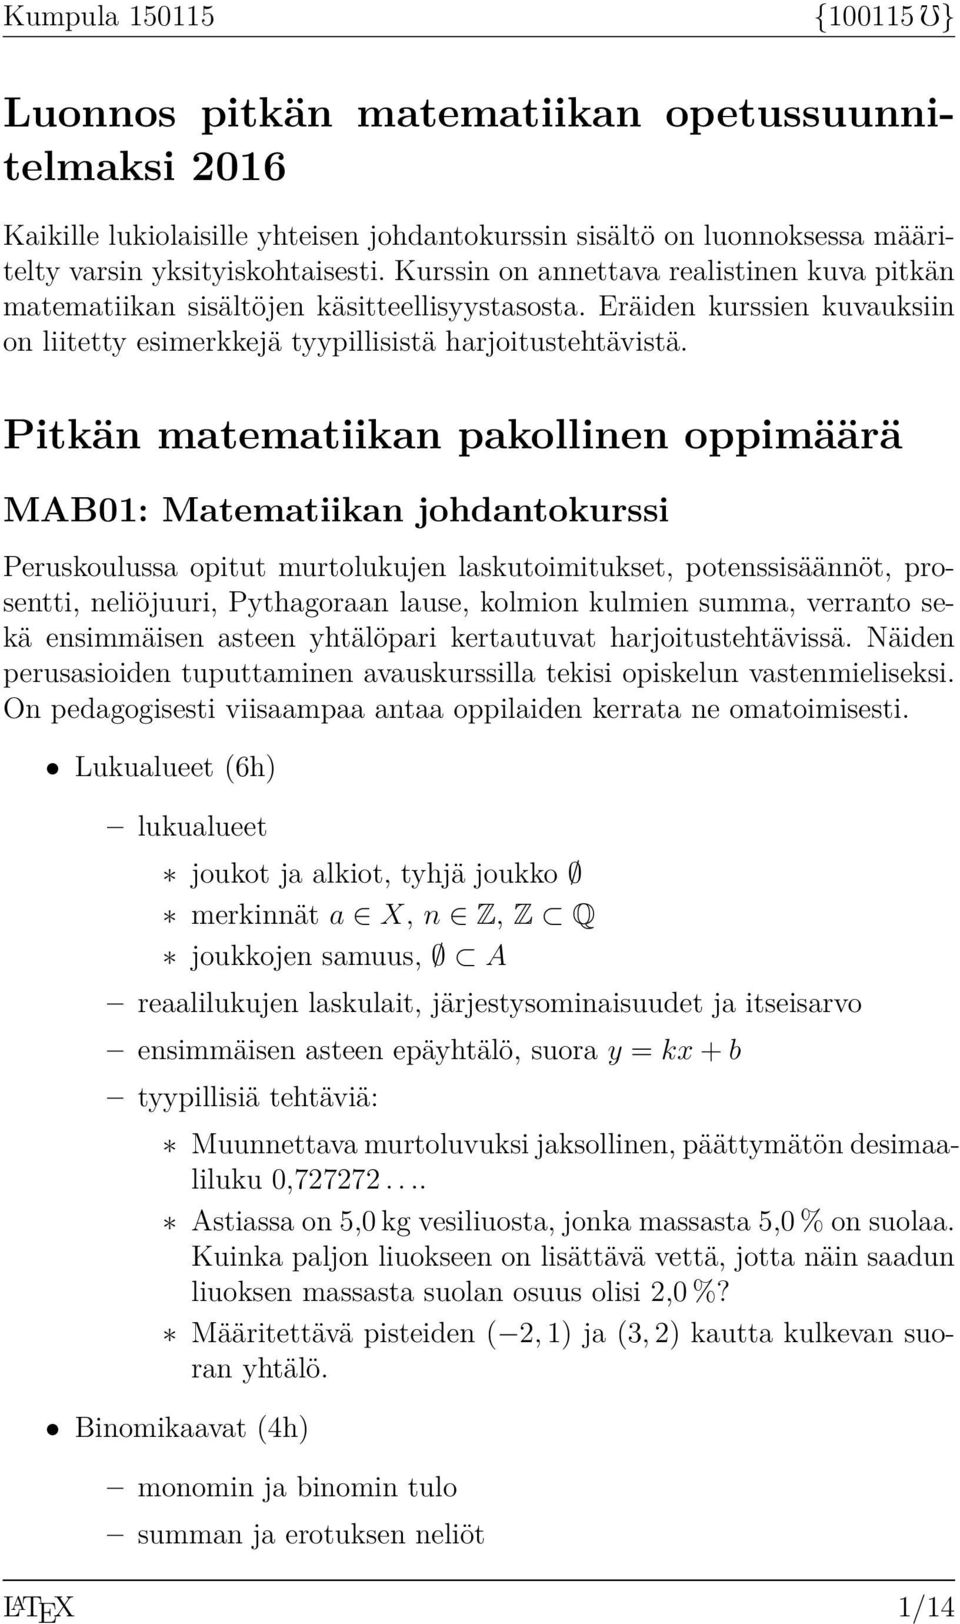 Pitkän matematiikan pakollinen oppimäärä MAB01: Matematiikan johdantokurssi Peruskoulussa opitut murtolukujen laskutoimitukset, potenssisäännöt, prosentti, neliöjuuri, Pythagoraan lause, kolmion